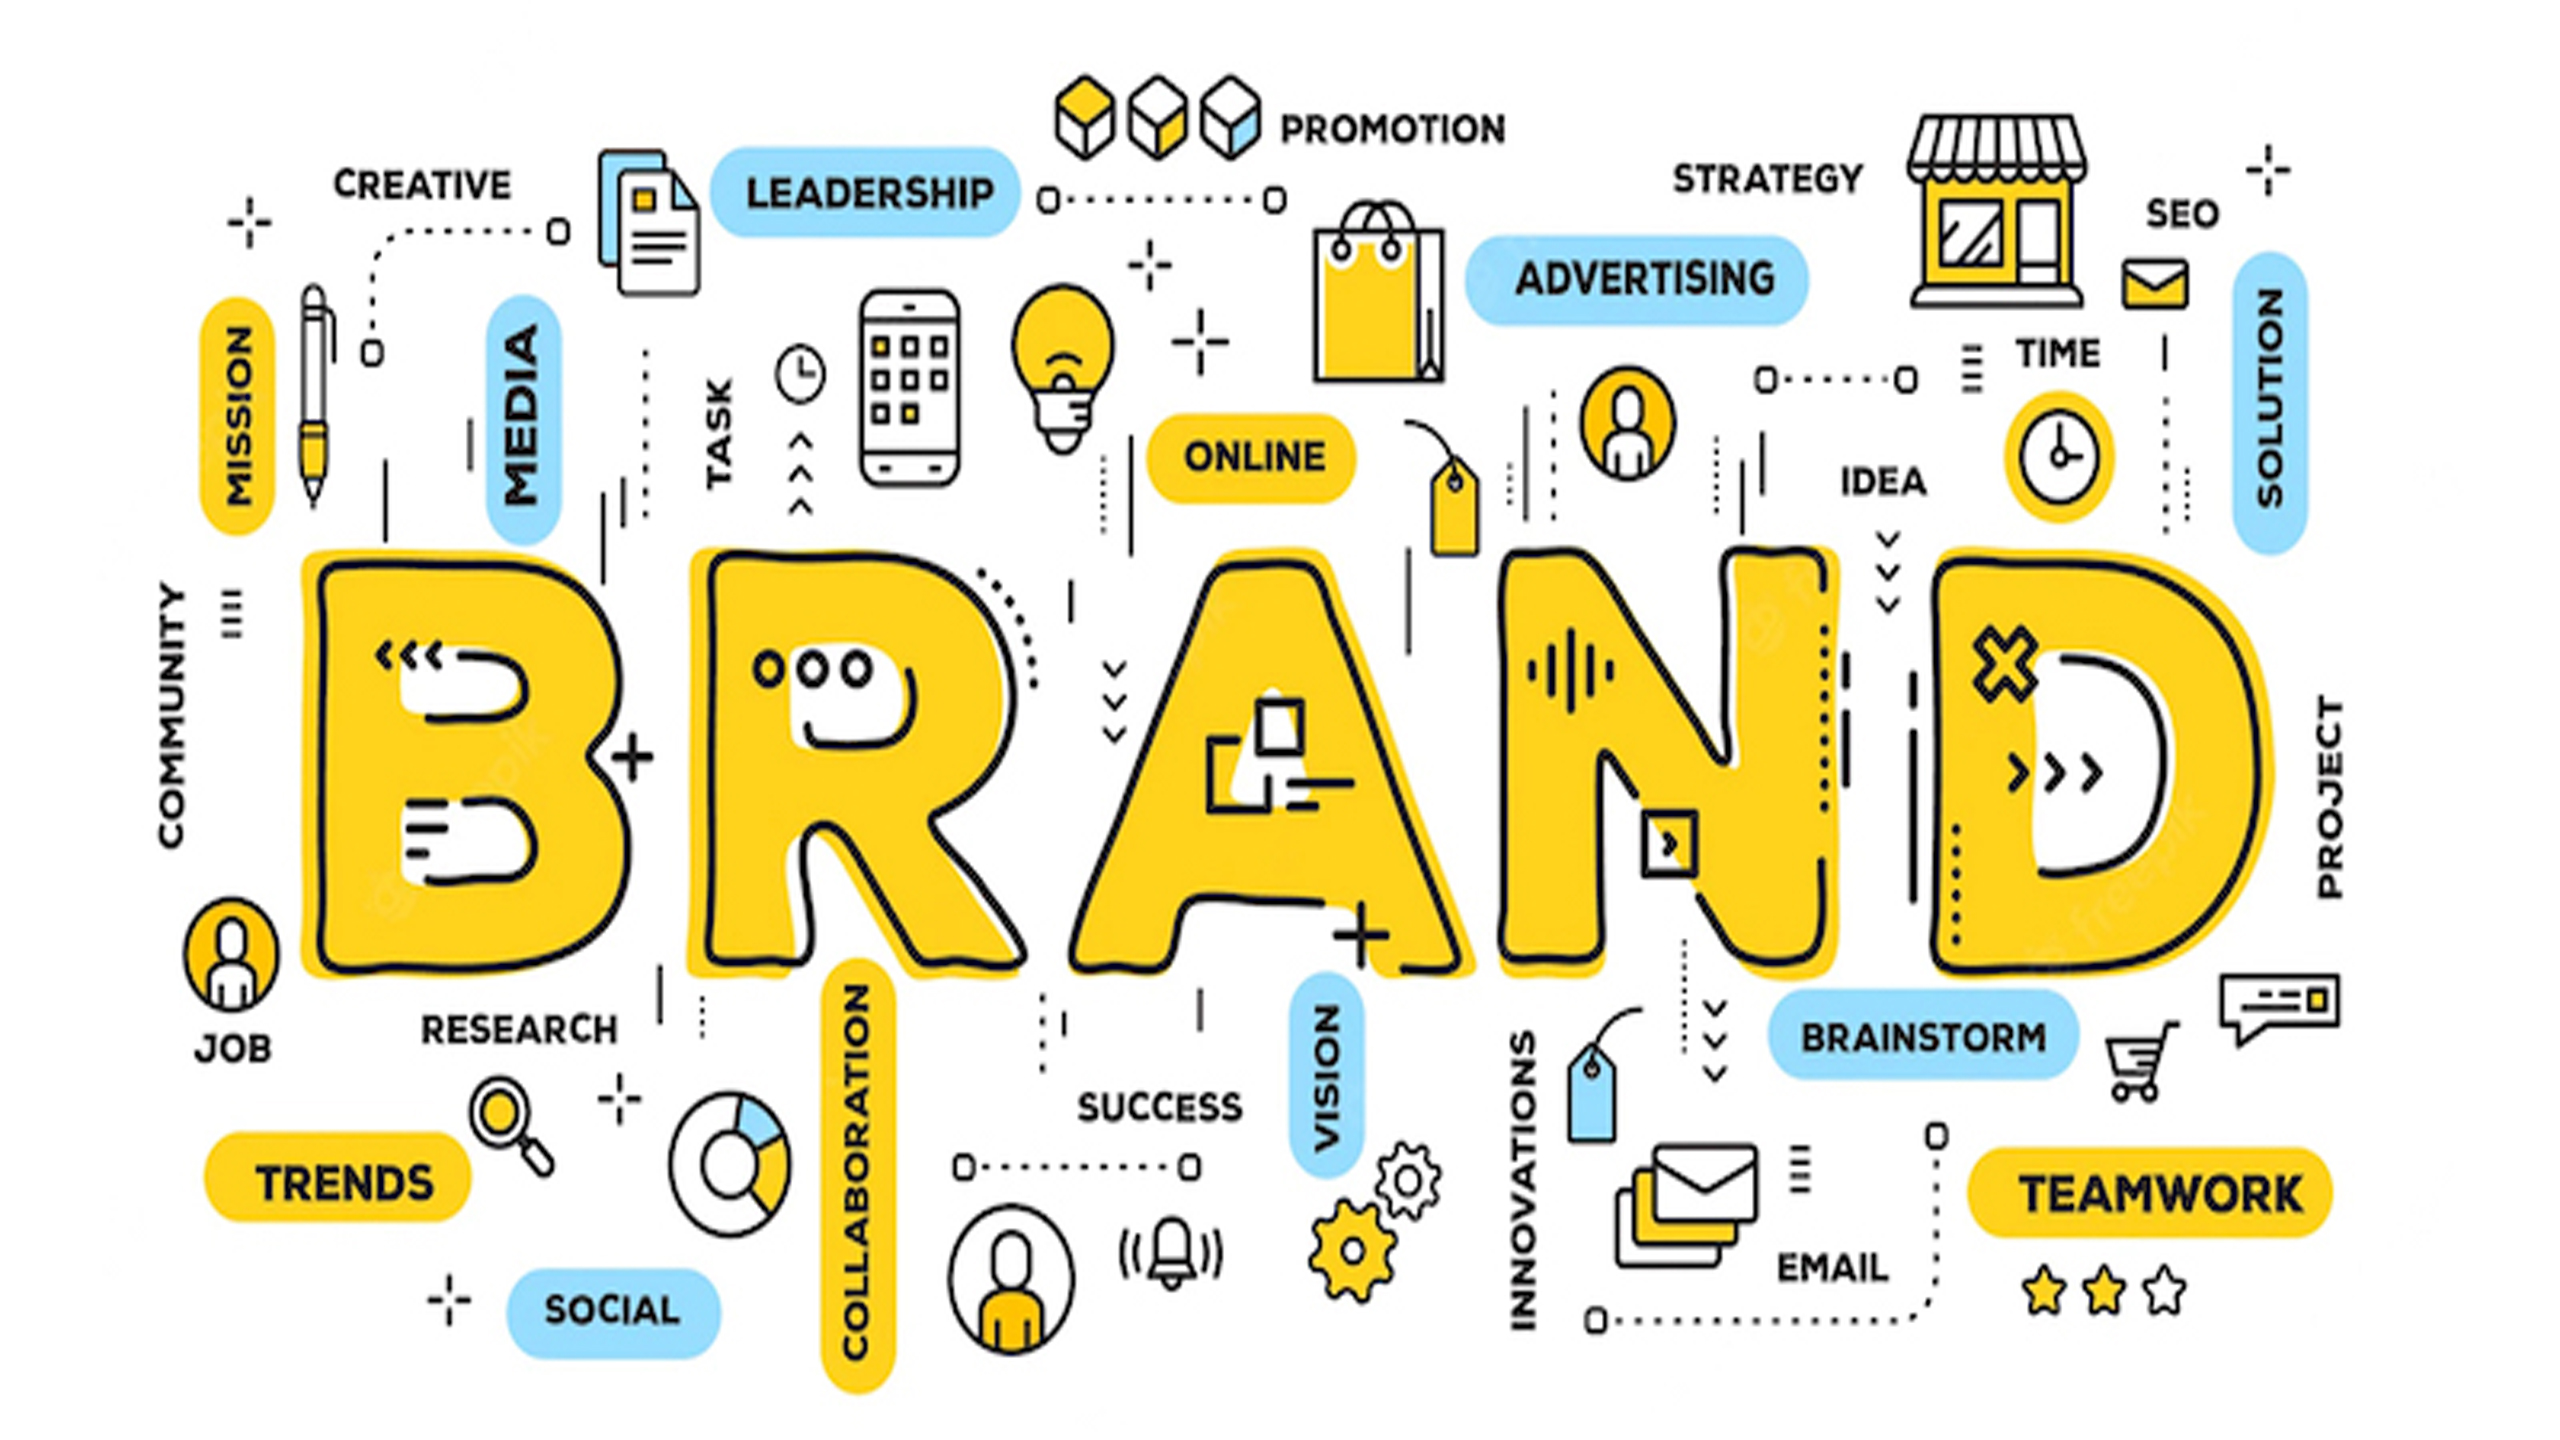 Sau khi xác định được giá trị cốt lõi của thương hiệu, bạn cần xây dựng hình ảnh thương hiệu để truyền tải thông điệp và giá trị đó đến khách hàng.